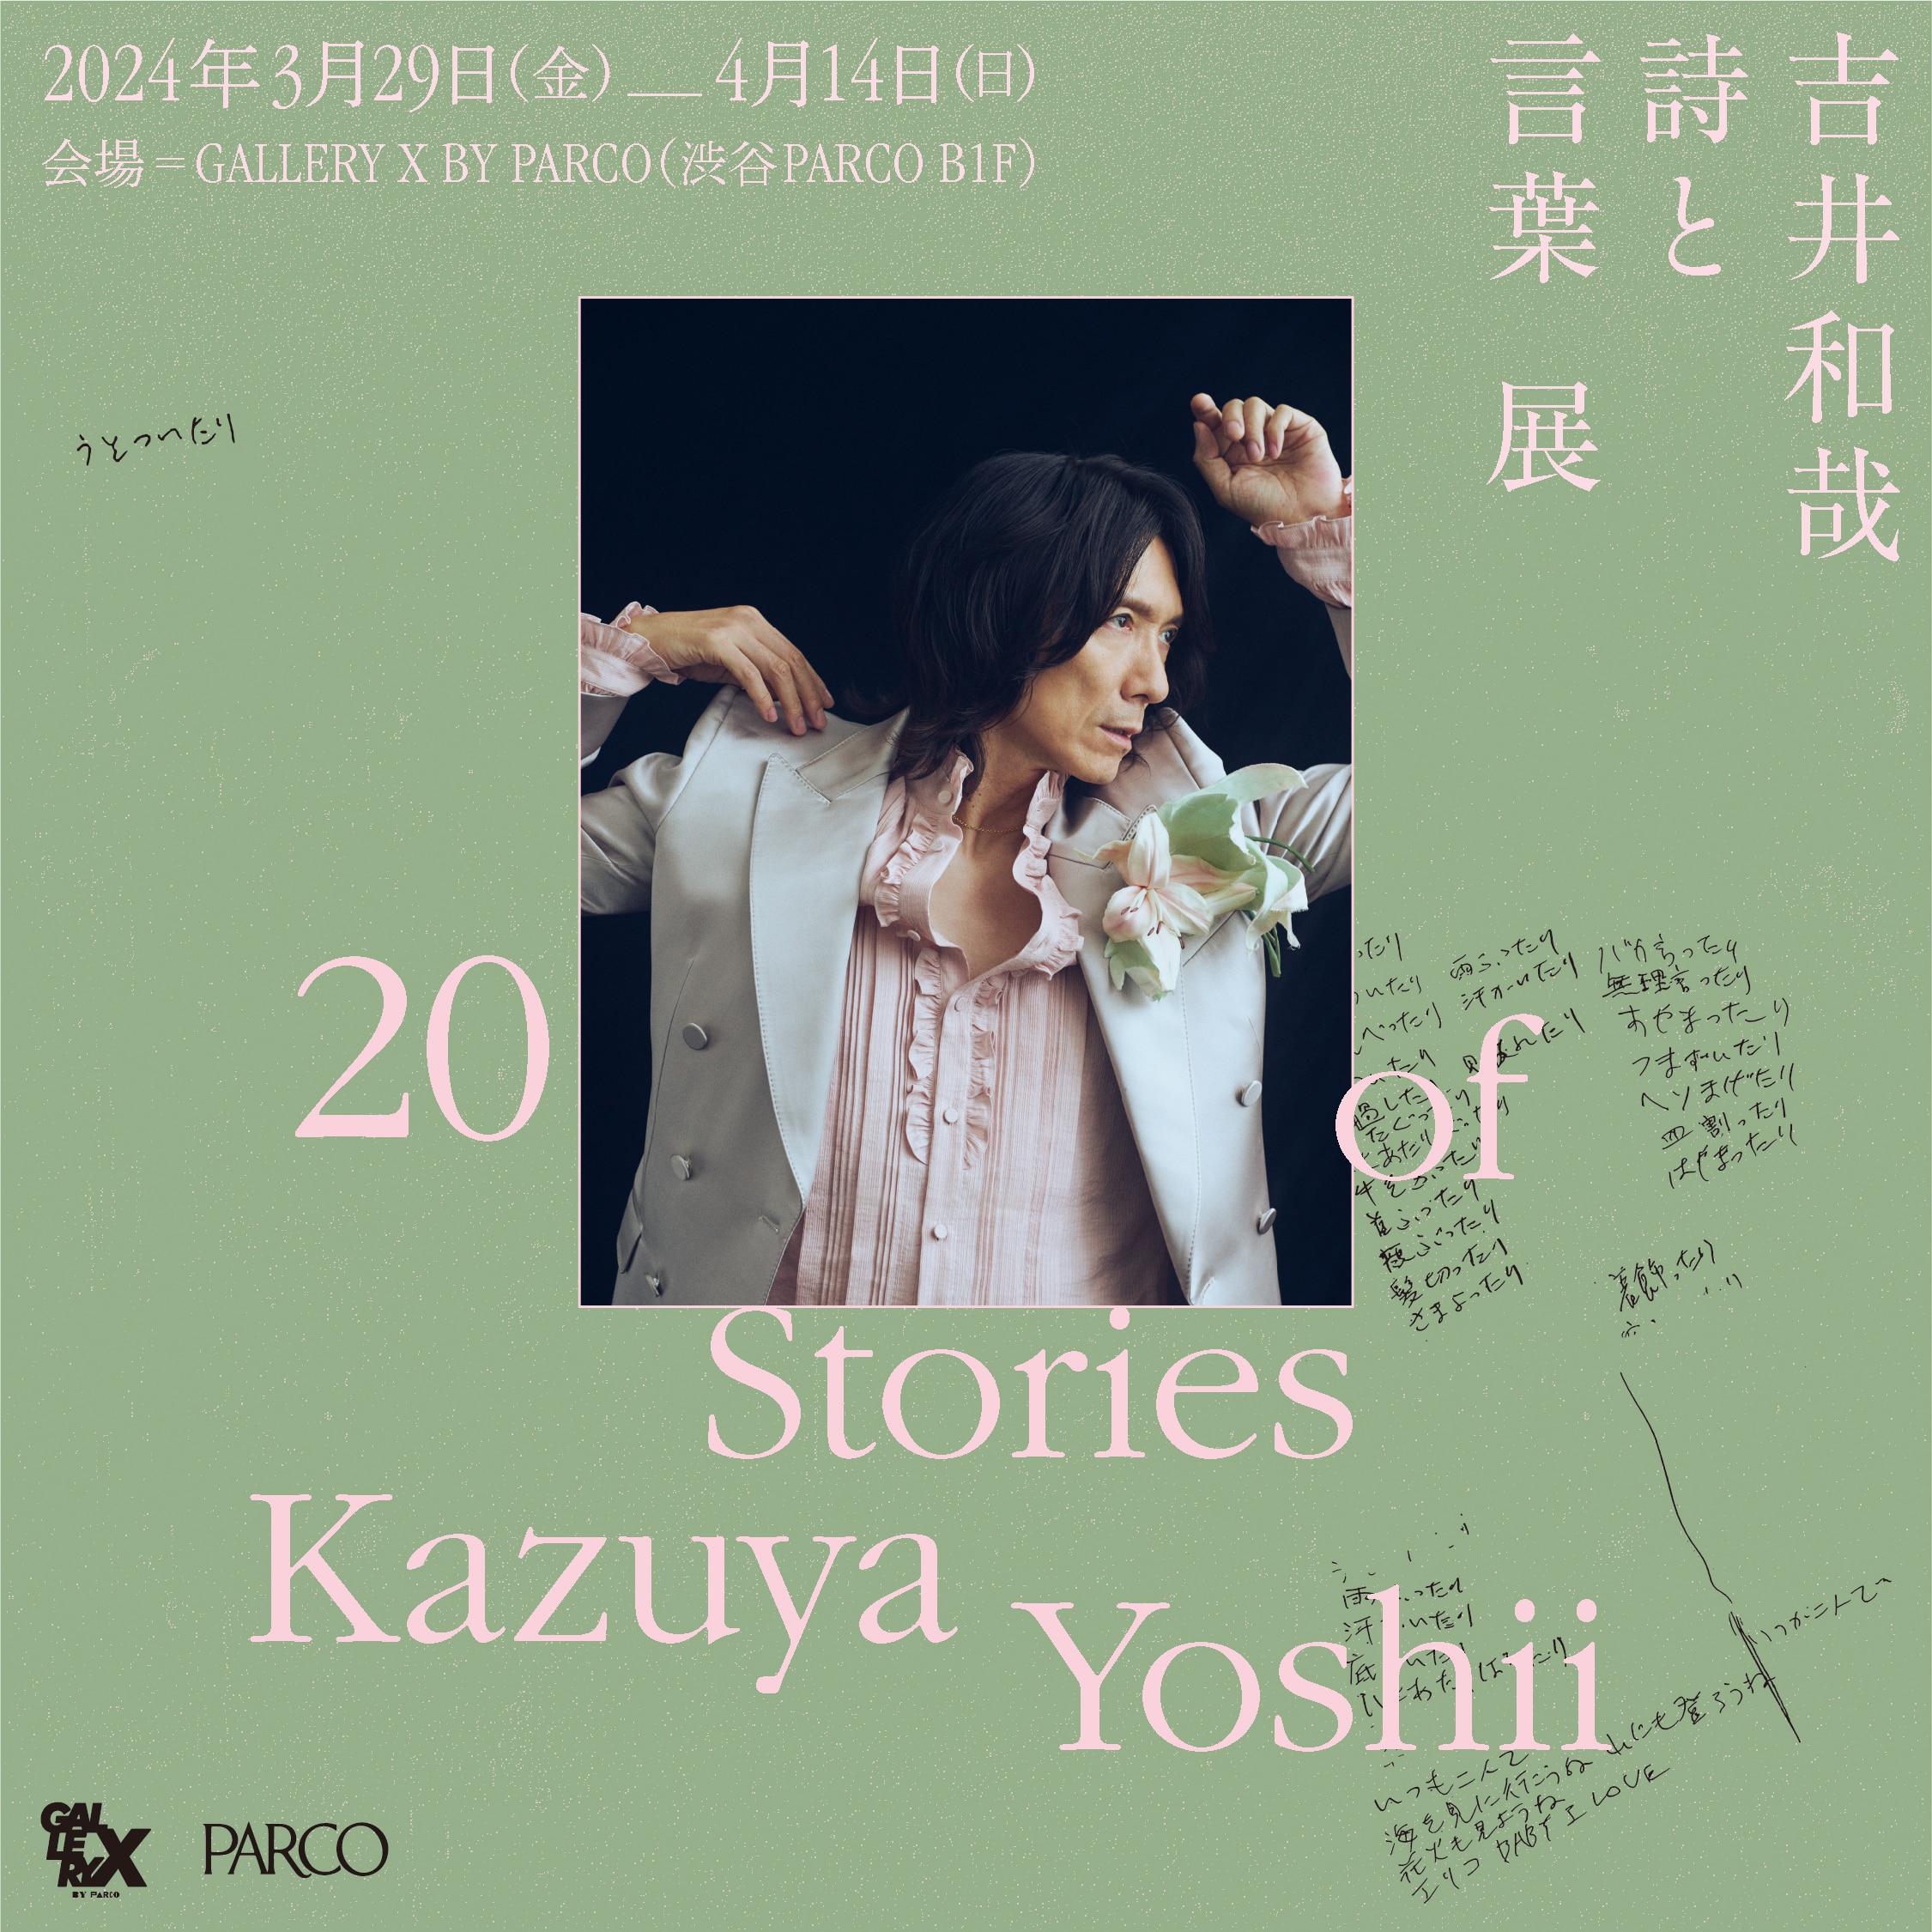 吉井和哉 詩と言葉展 20 Stories of Kazuya Yoshii